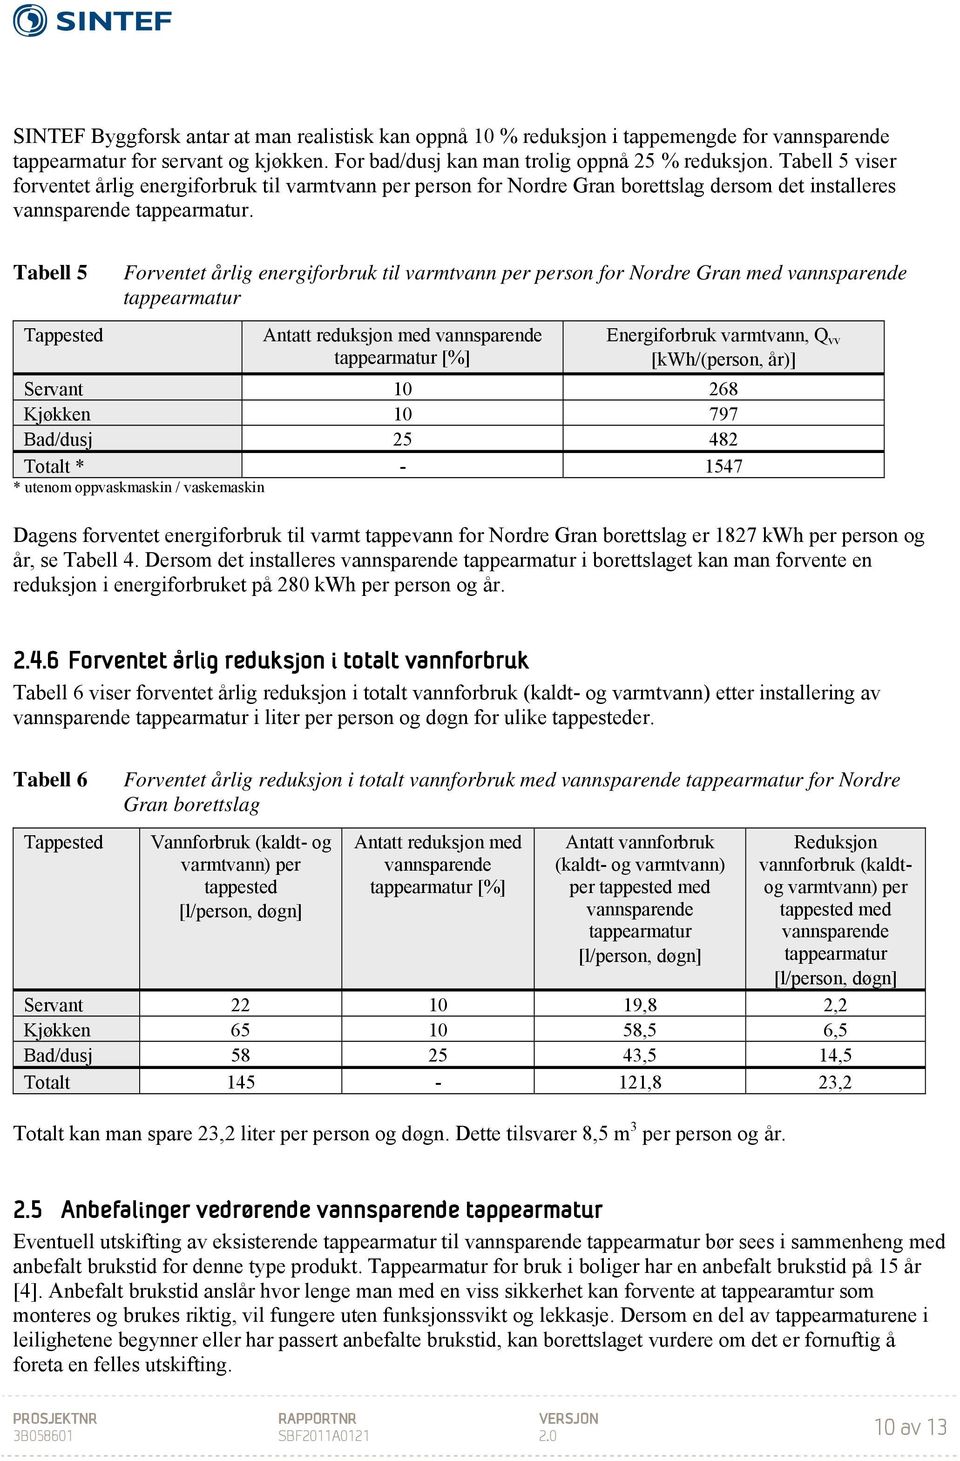 Tabell 5 Tappested Forventet årlig energiforbruk til varmtvann per person for Nordre Gran med vannsparende tappearmatur Antatt reduksjon med vannsparende tappearmatur [%] Energiforbruk varmtvann, Q